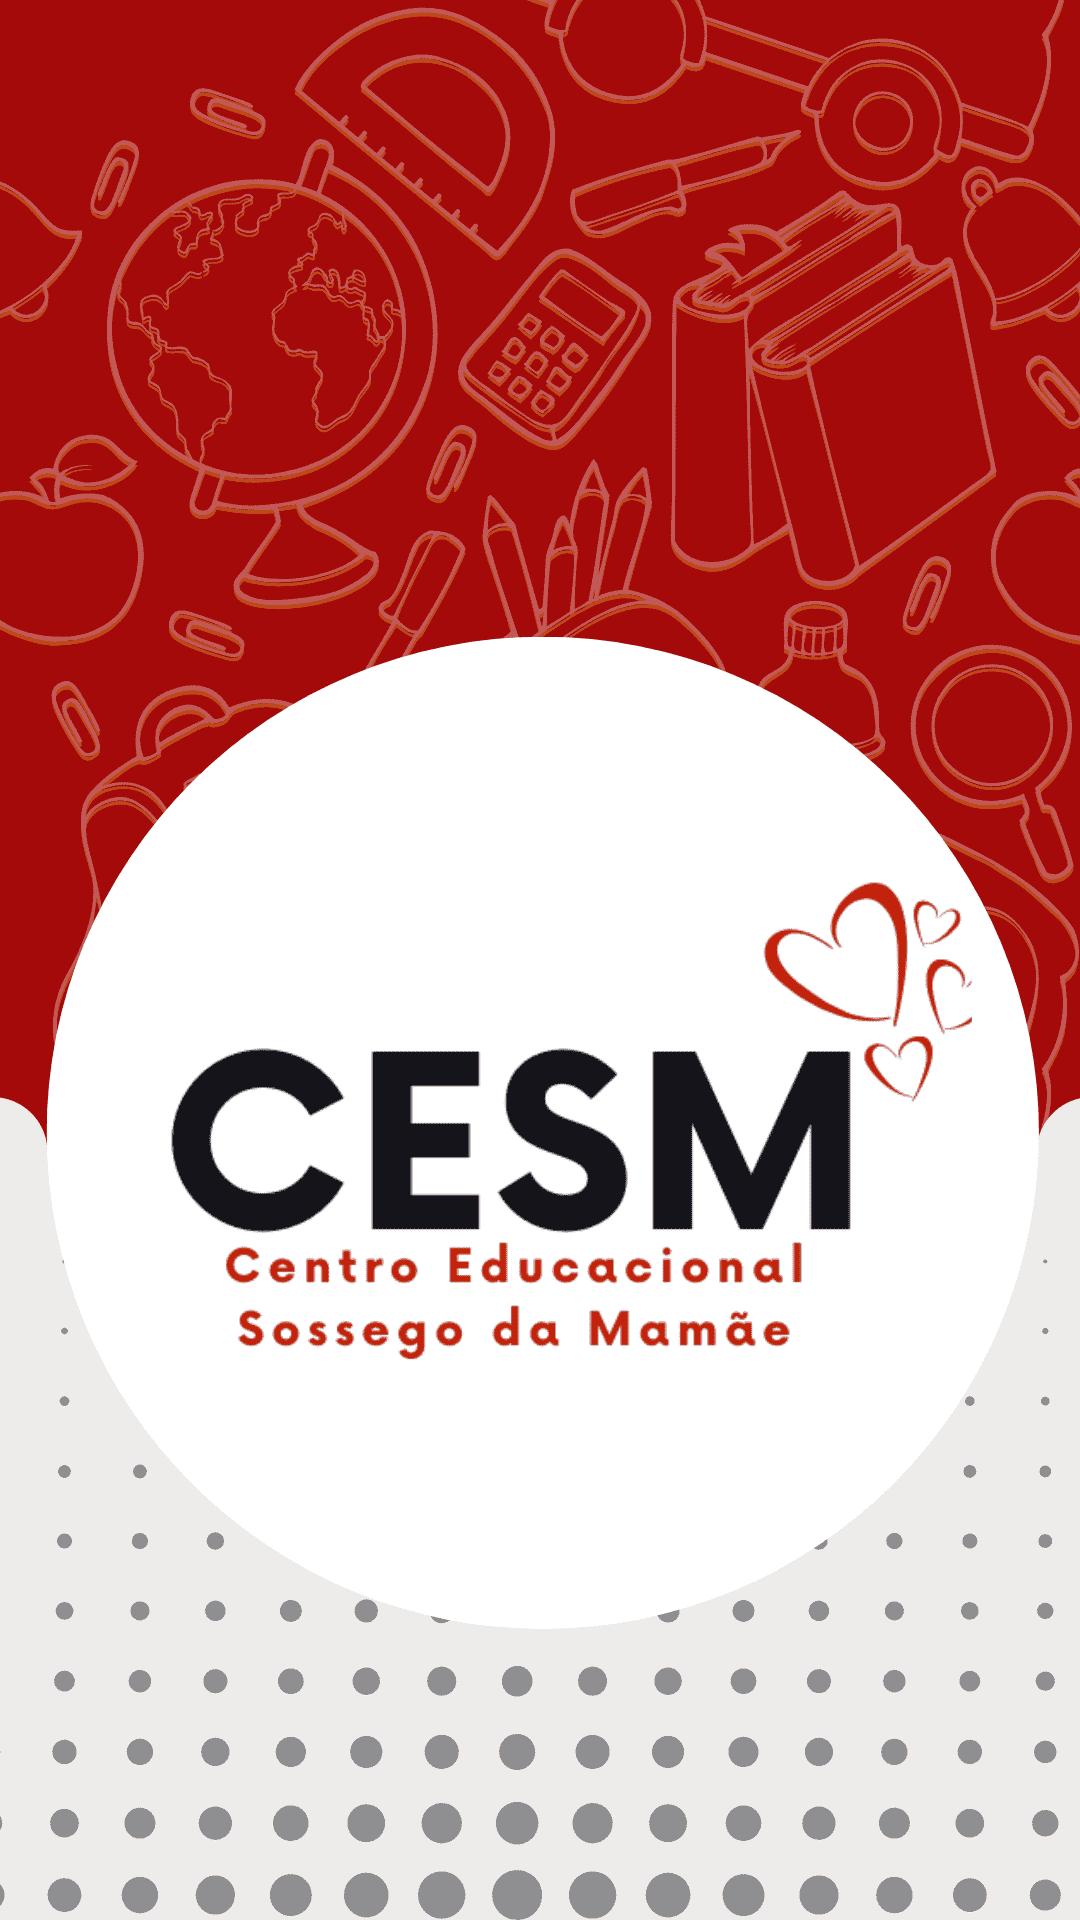  Centro Educacional Sossego Da Mamãe - Cesm 